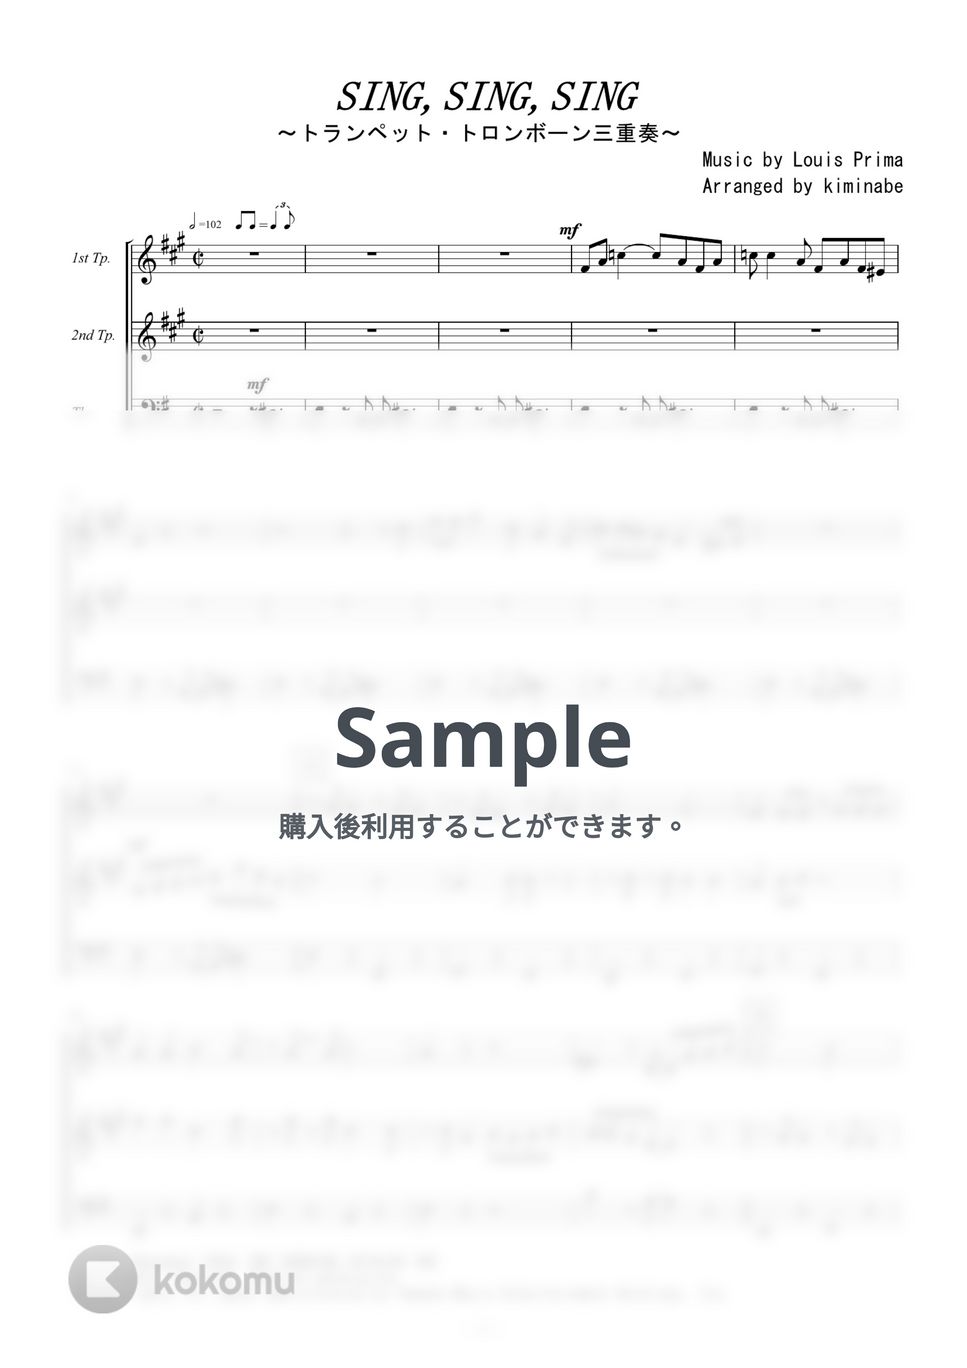 ベニーグッドマン - Sing,Sing,Sing (トランペット・トロンボーン三重奏) by kiminabe